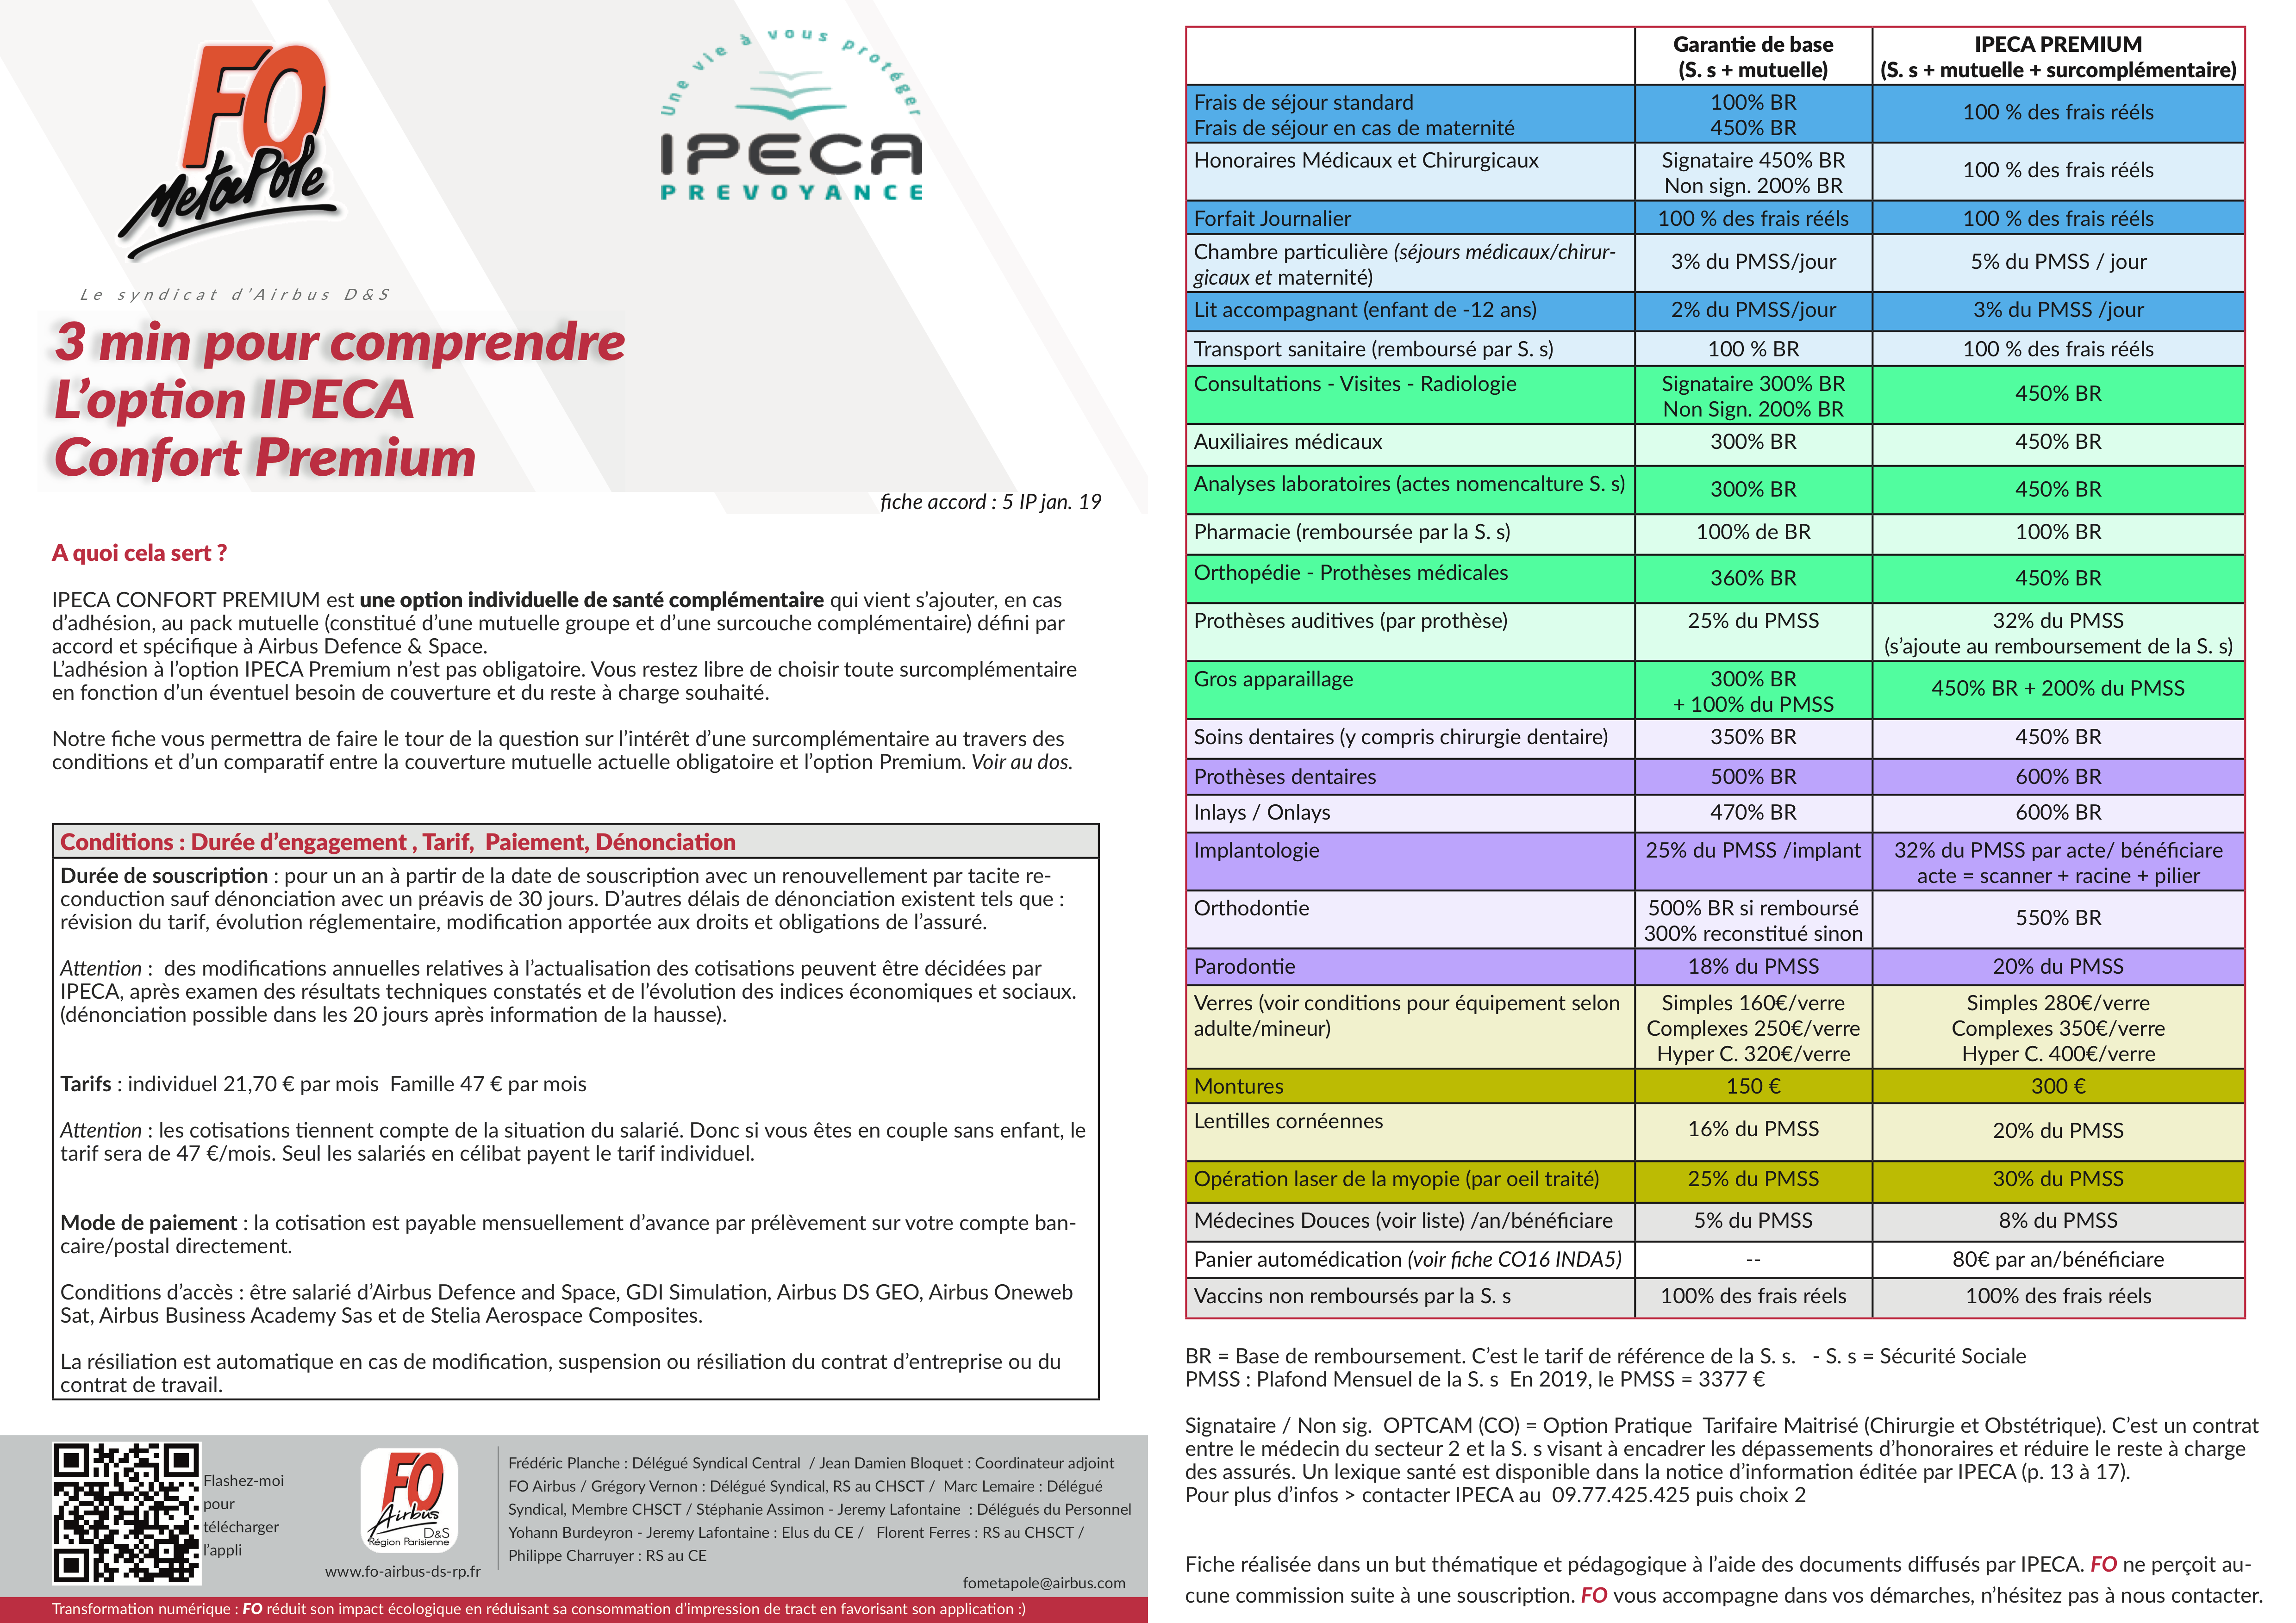 Ipeca Premium confort surcomplémentaire mutuelle Statut social Airbus Def & Space